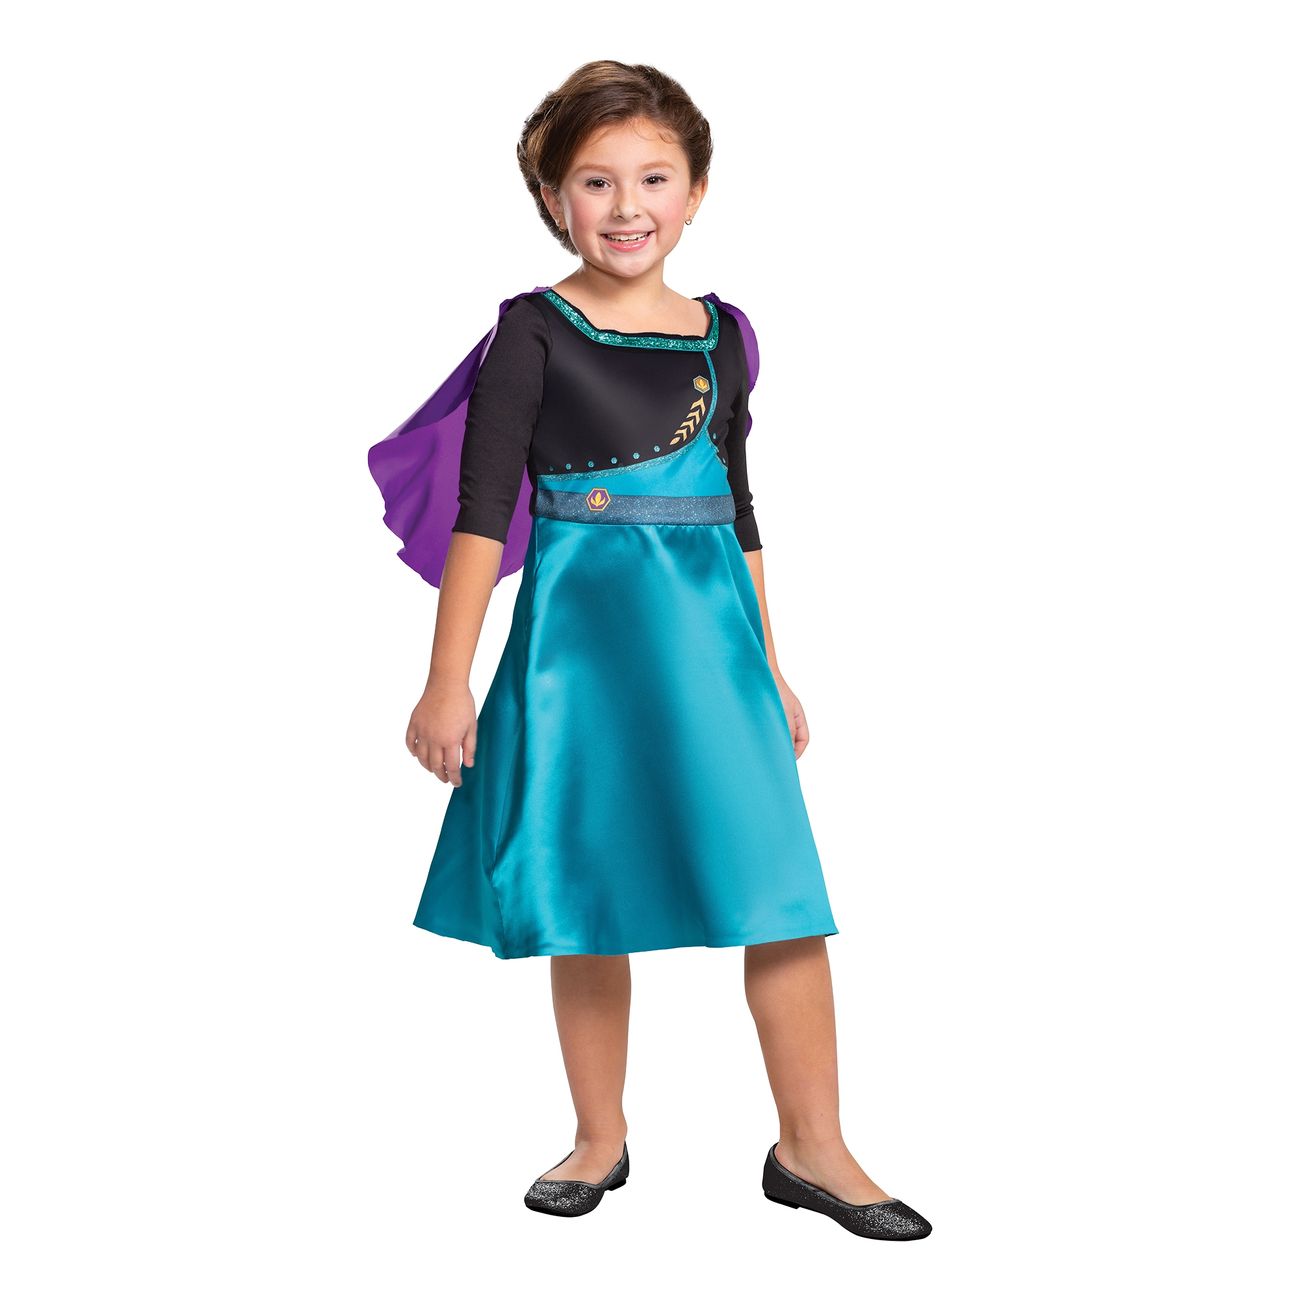 Frozen Anna budget børnekostume - Disney prinsesse kostume til børn